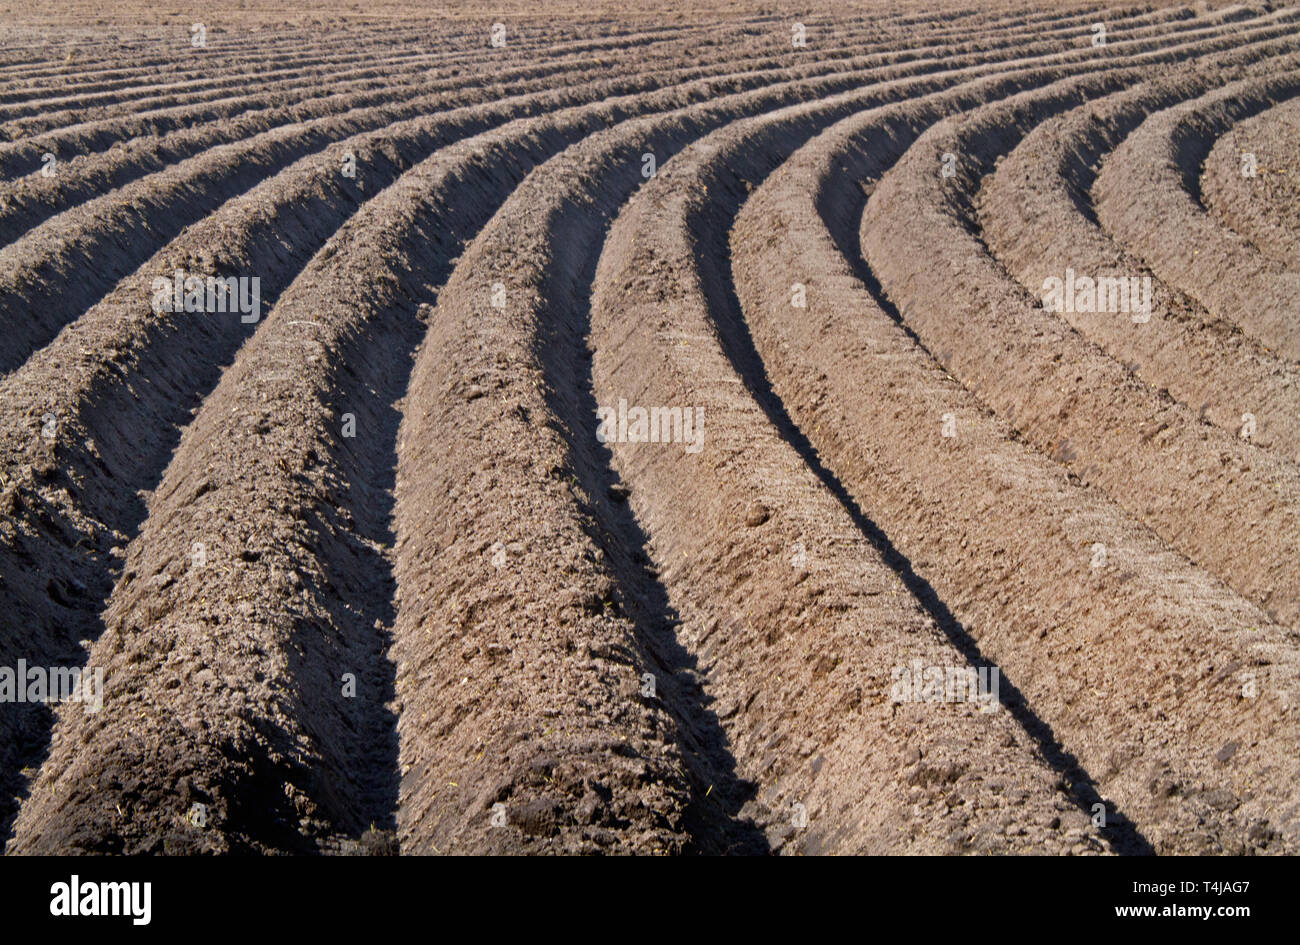 Muster der geschwungenen Bergrücken und Furchen in einem huminsäuren sandigen Feld, vorbereitet für den Anbau von Kartoffeln Stockfoto